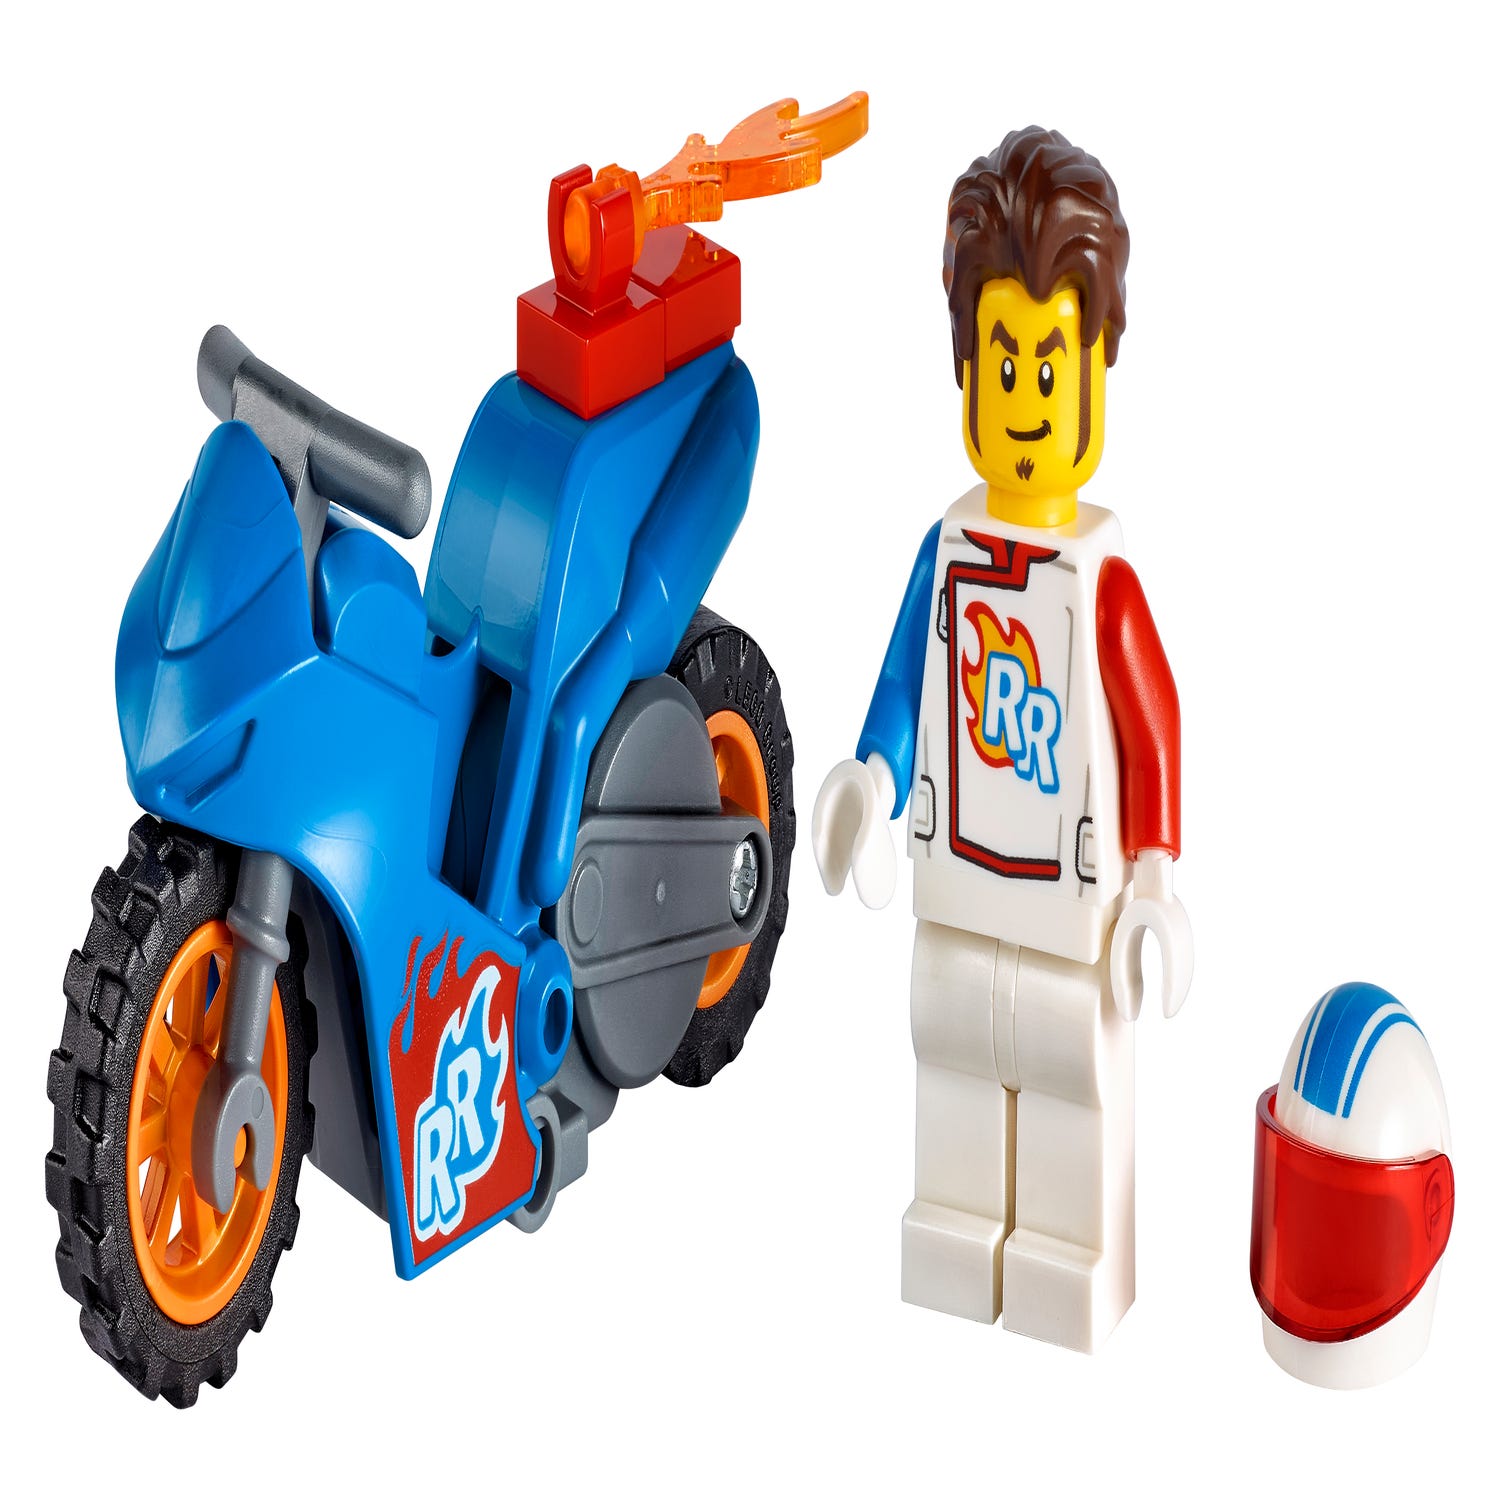 Lego 60298 city stuntz la moto de cascade fusée, moto a